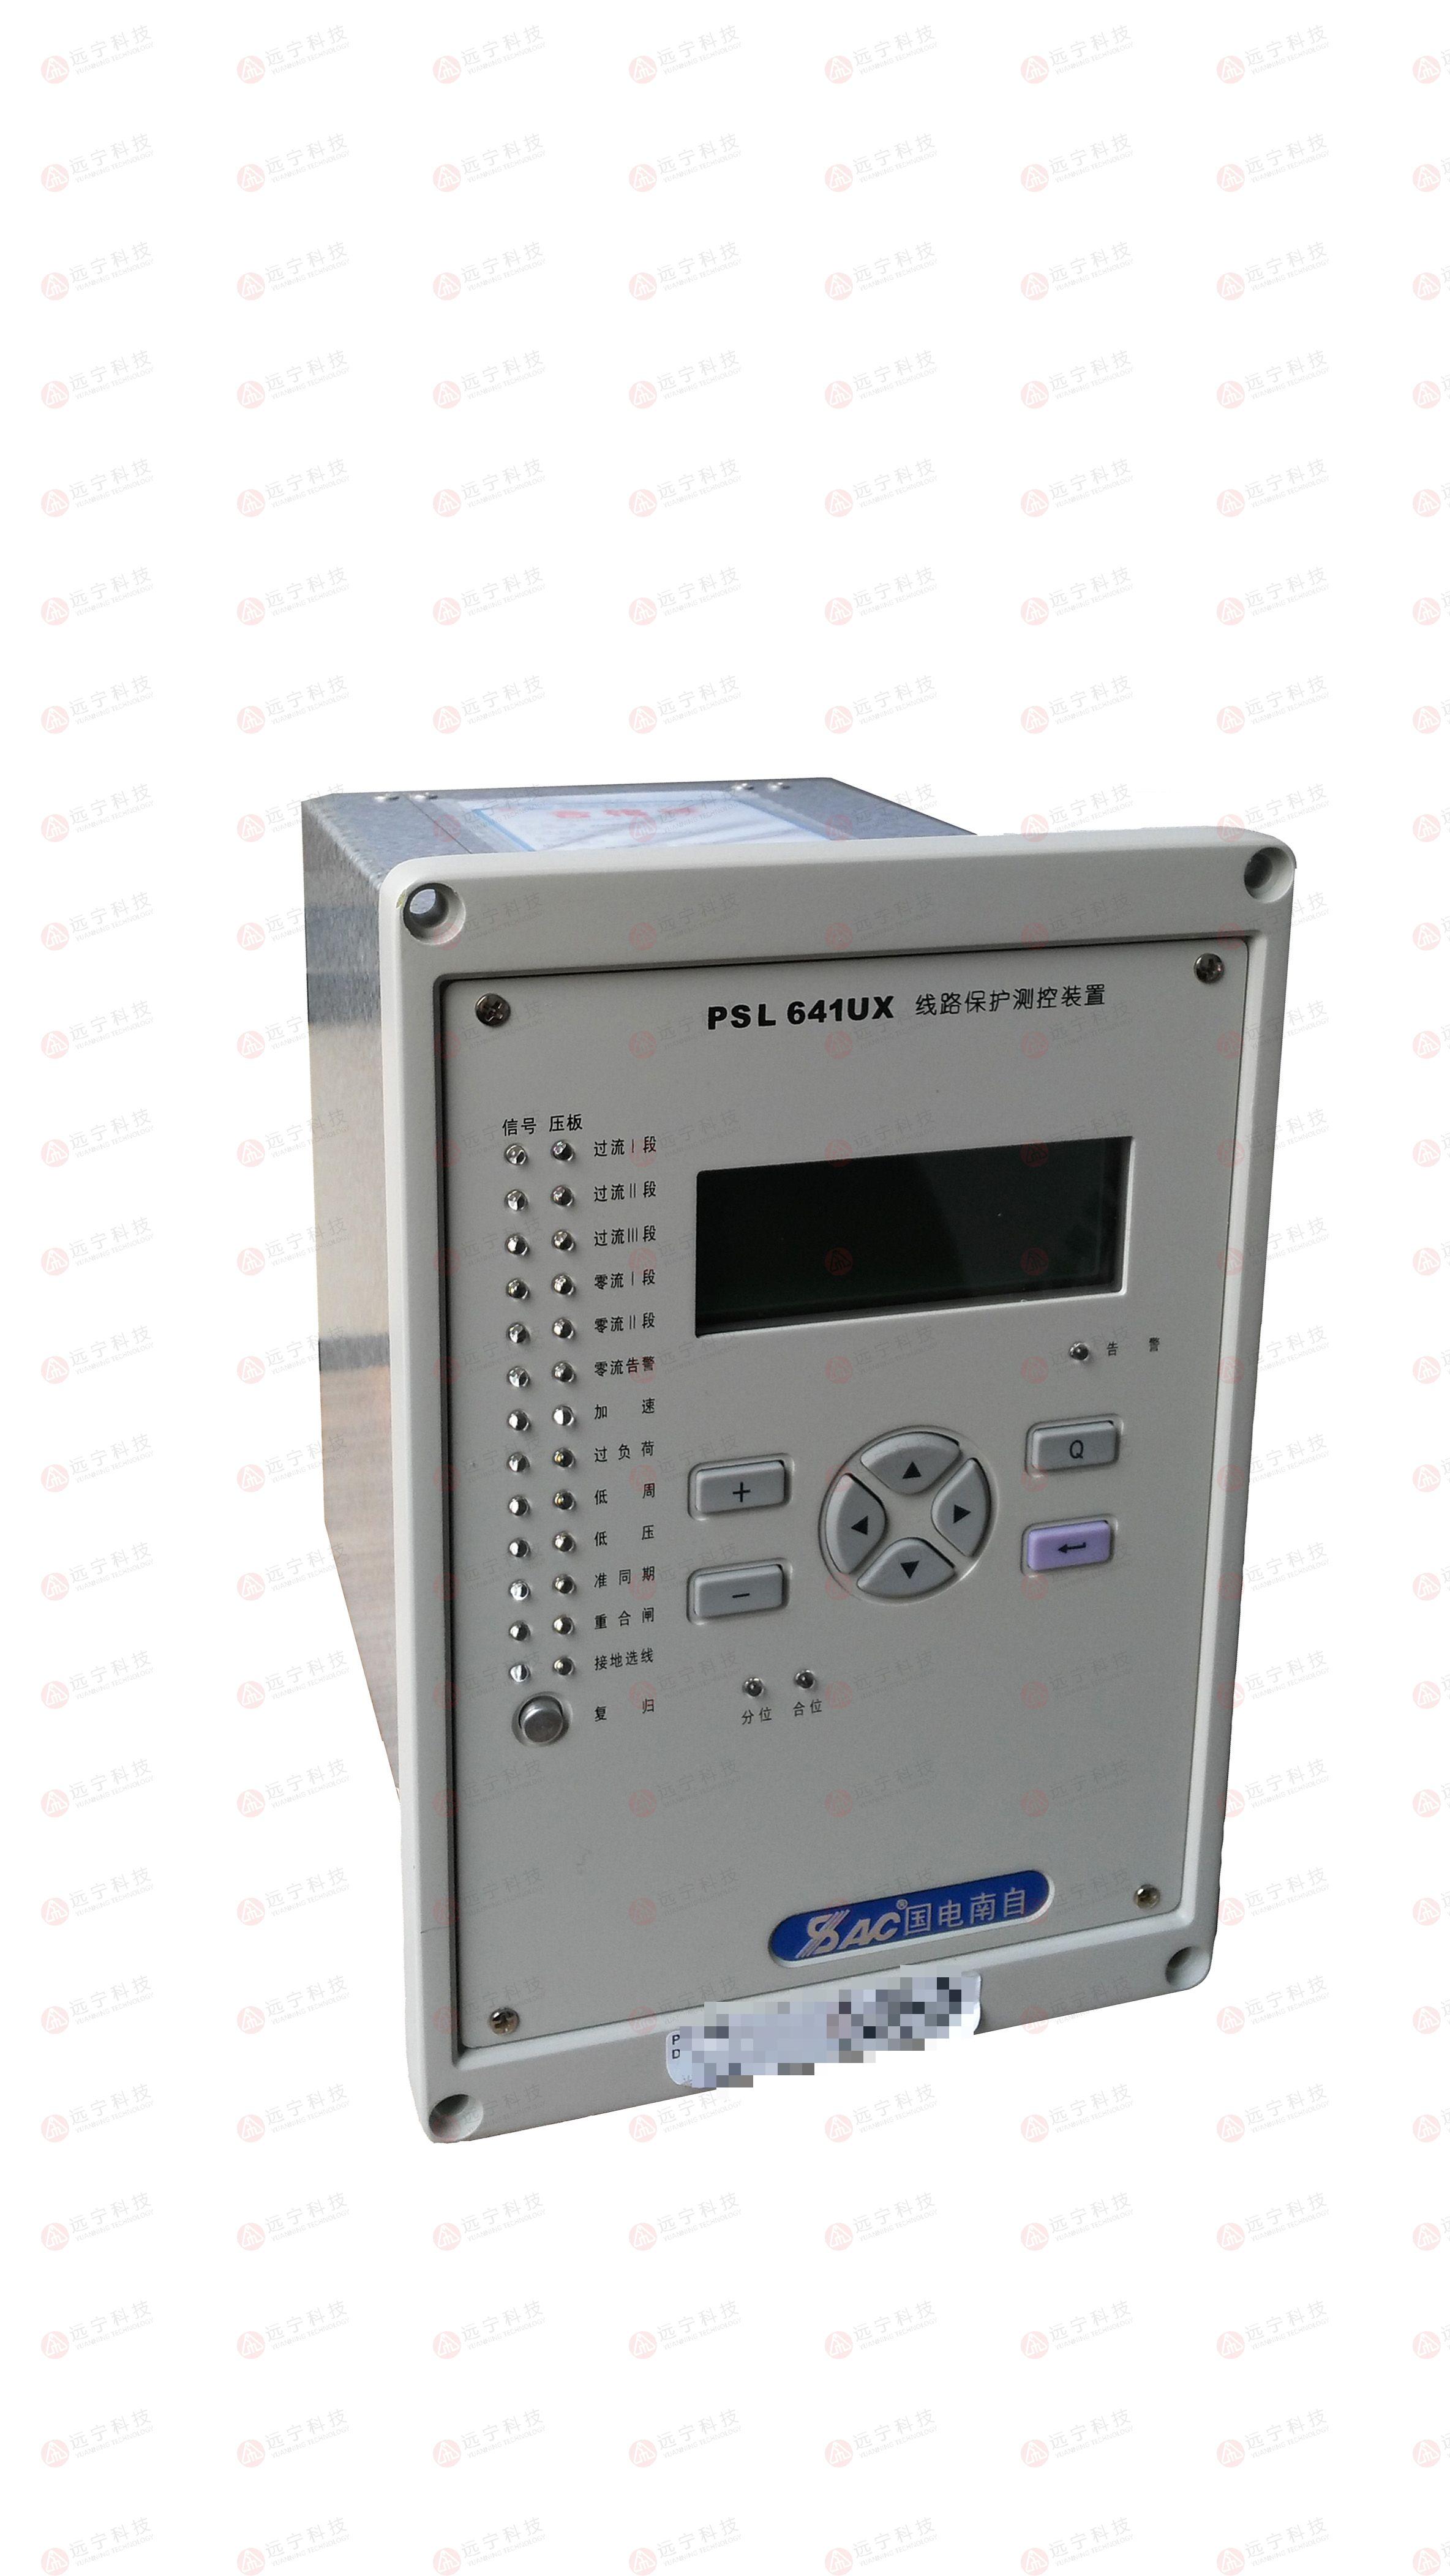 国电南自PST642UX变压器保护测控装置